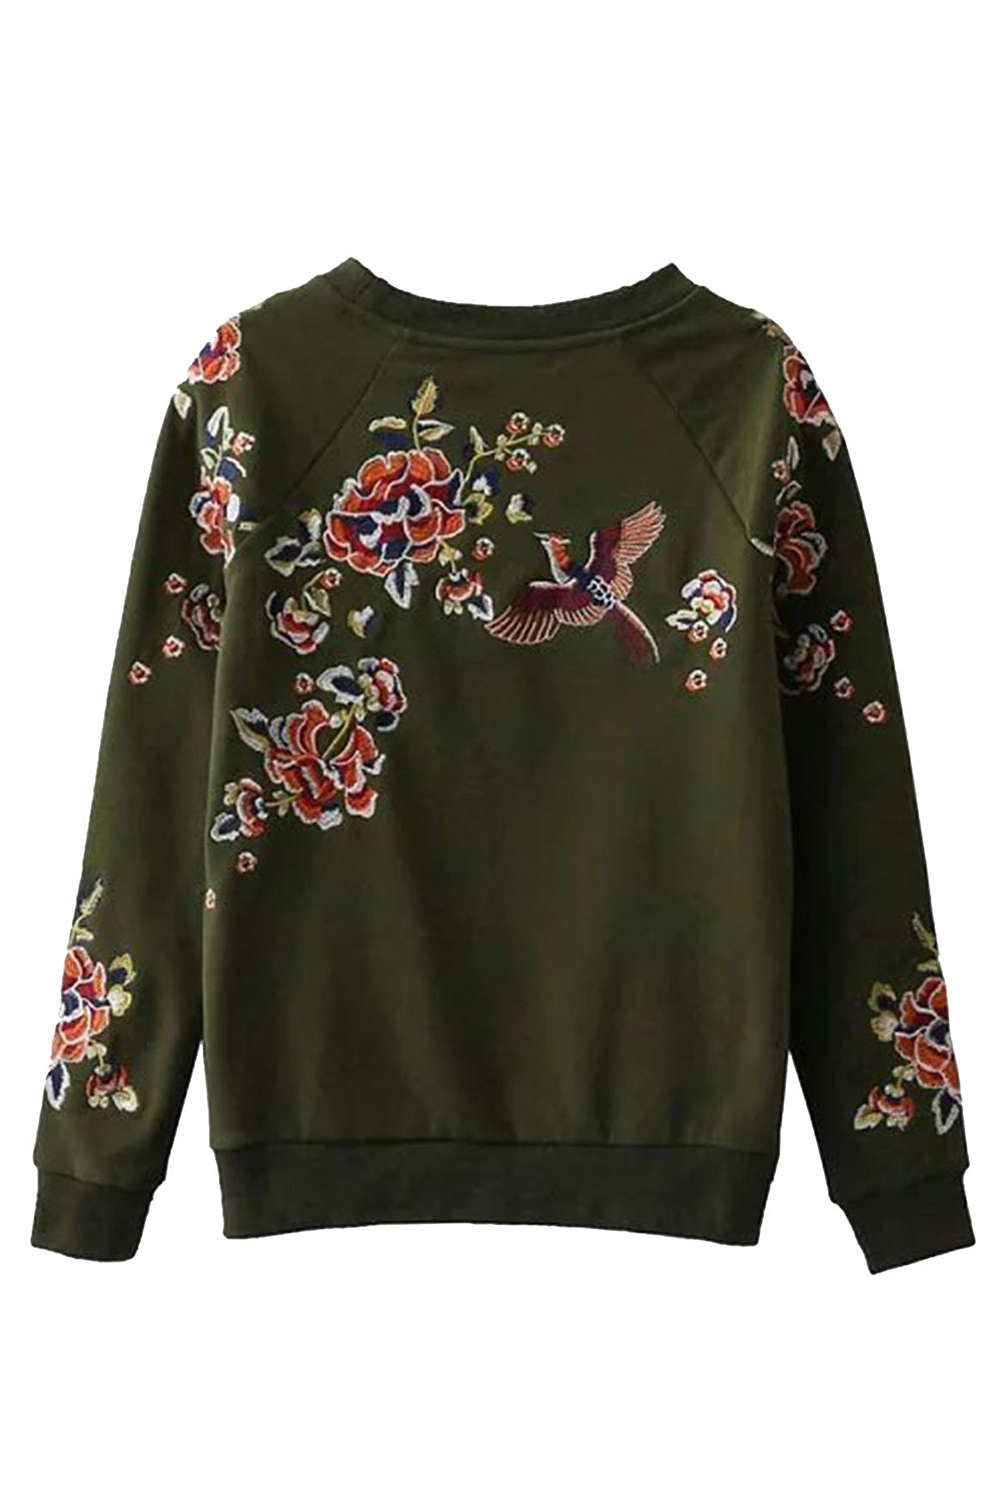 Iyasson Floral Embroidered Crew Neck Sweatshirt